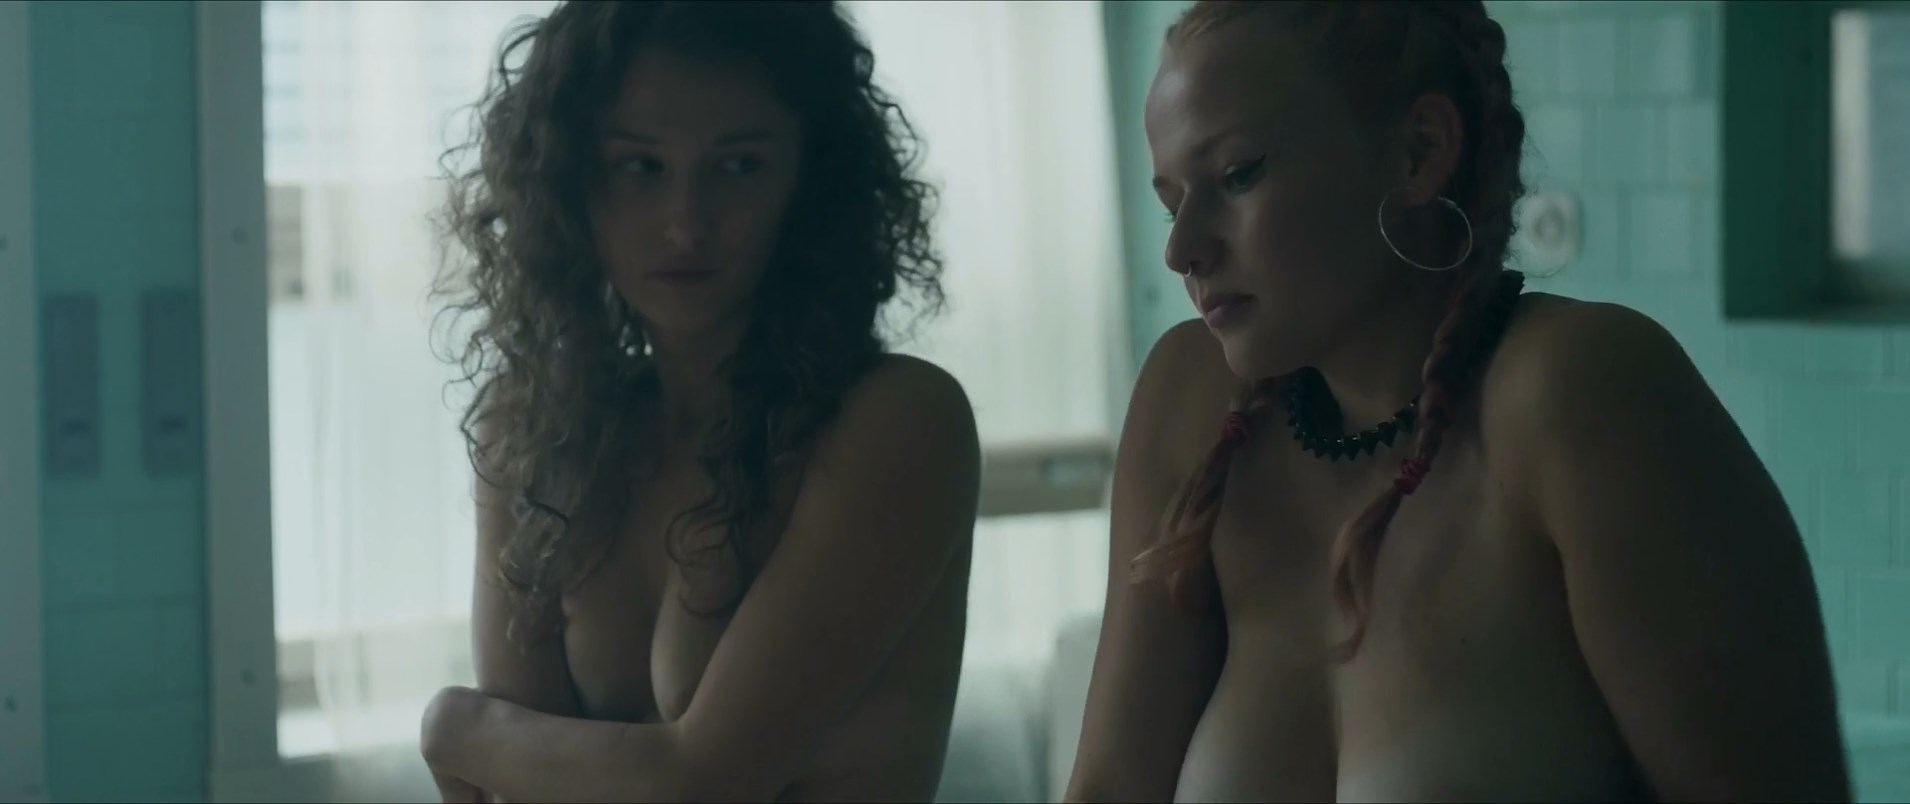 Petra Dubayova nude, Rebeka Greganova nude - Svina (2020)